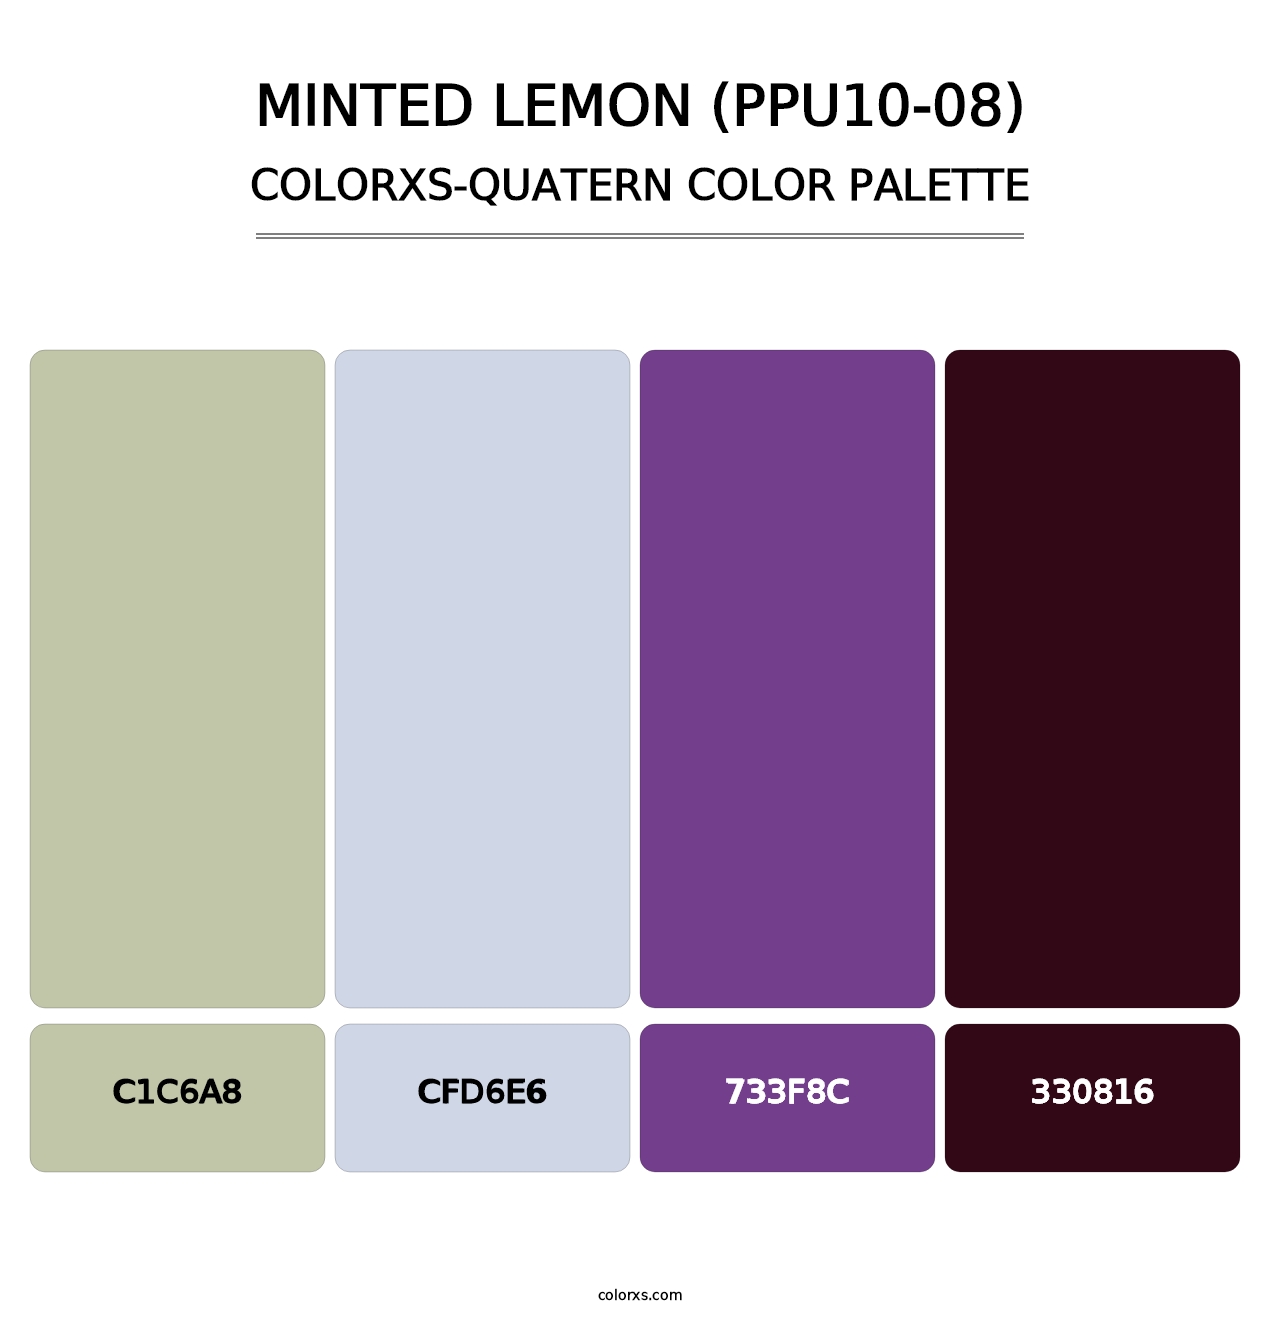 Minted Lemon (PPU10-08) - Colorxs Quatern Palette